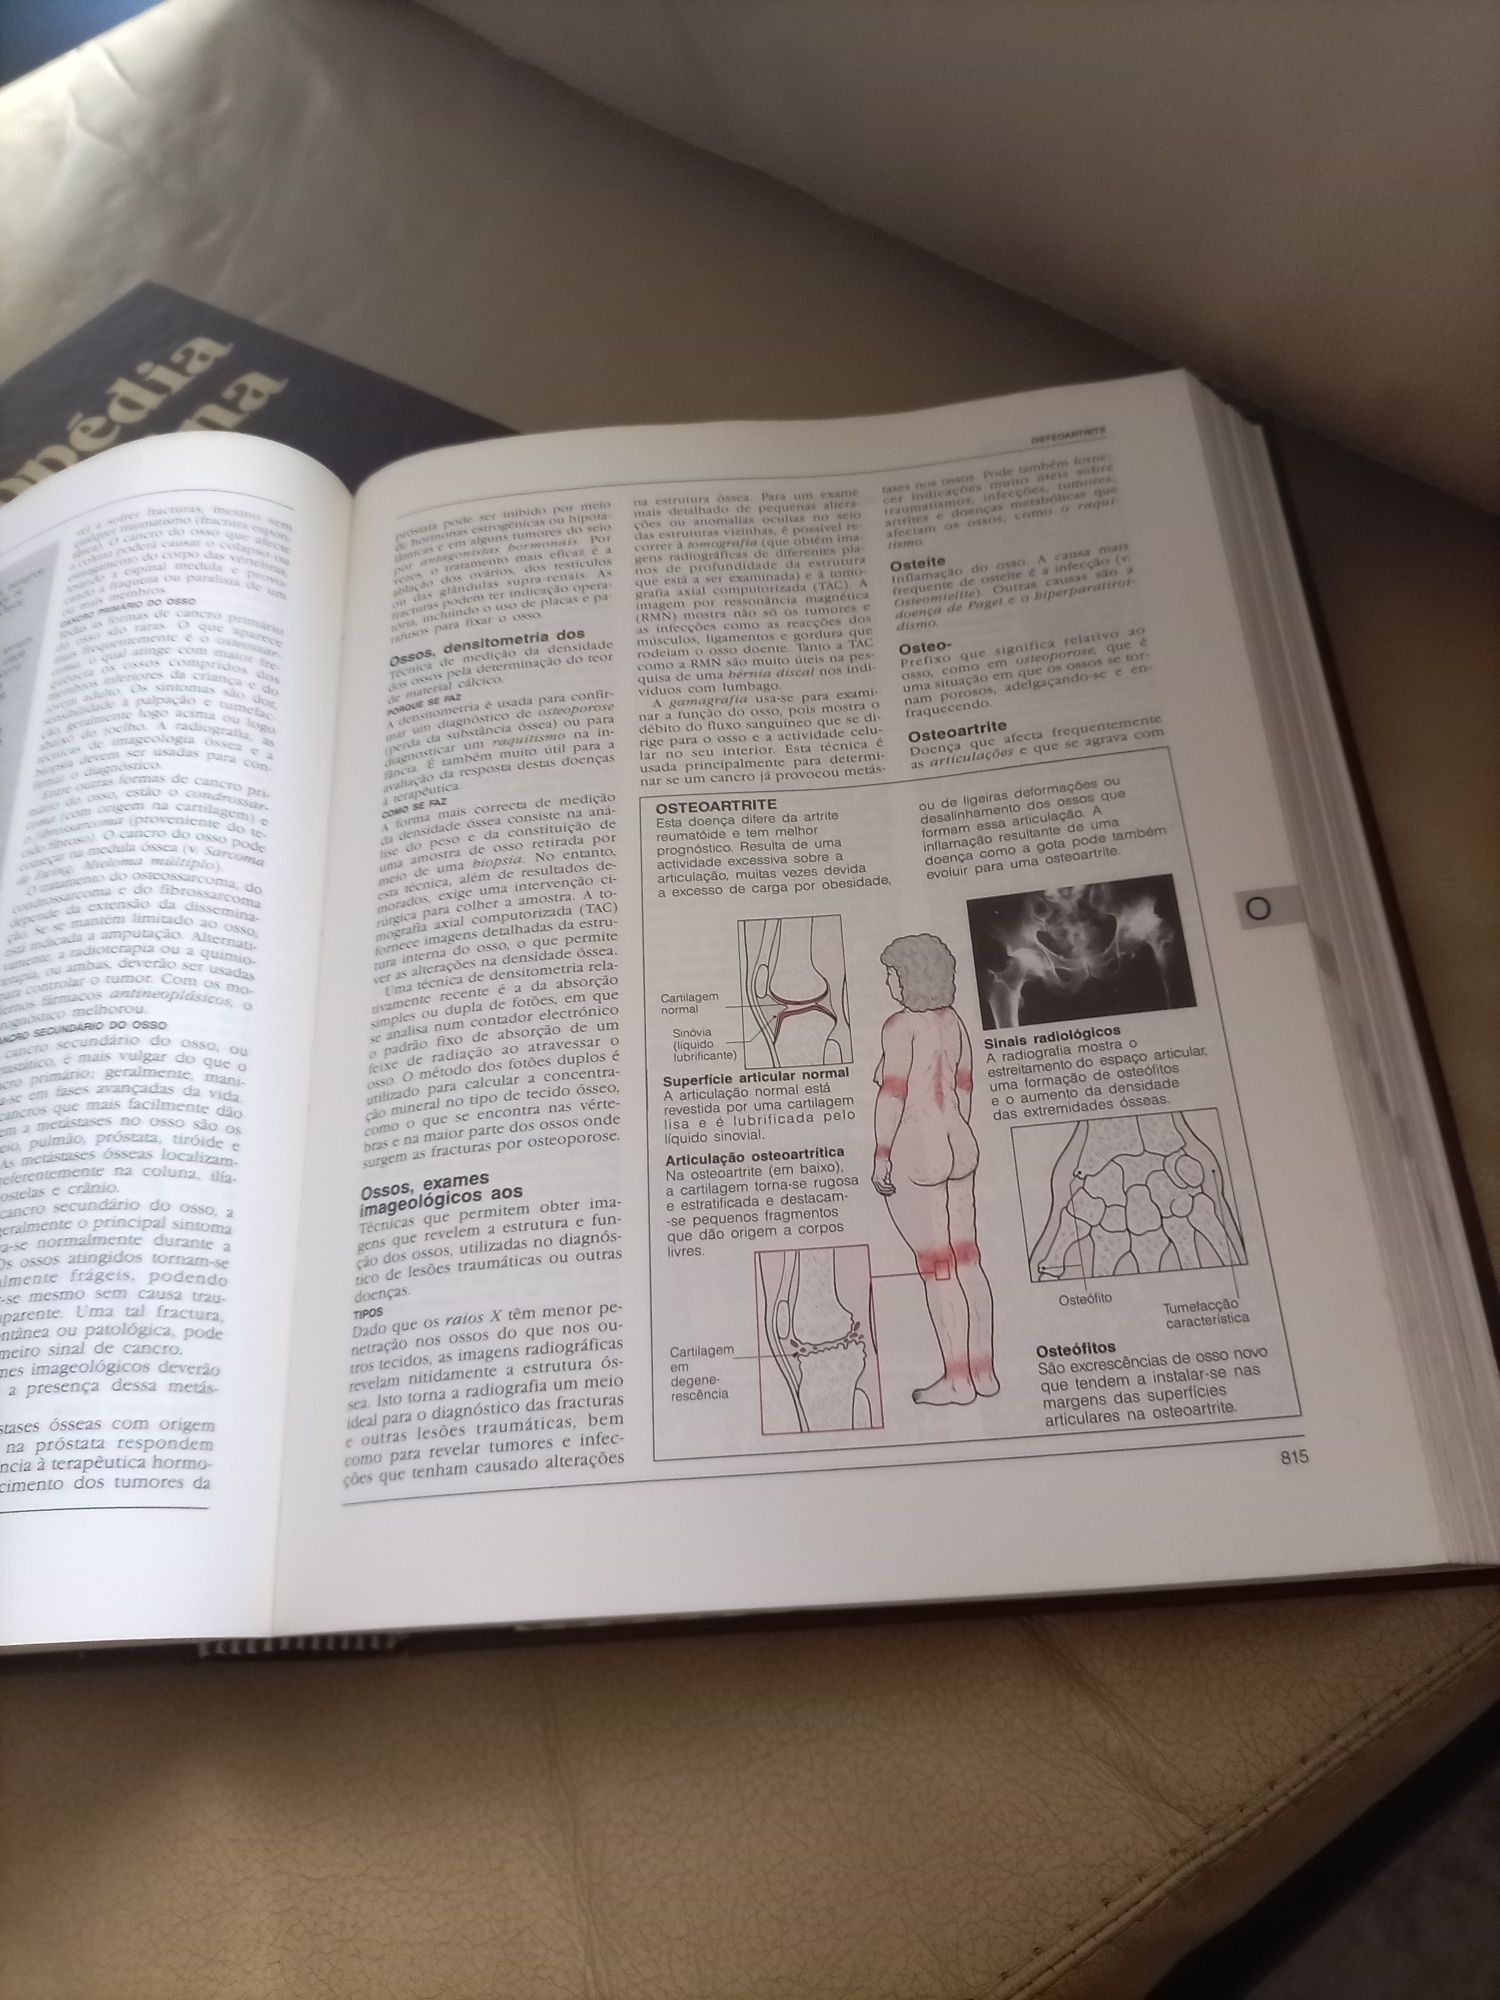 Livro  "Enciclopédia de Medicina